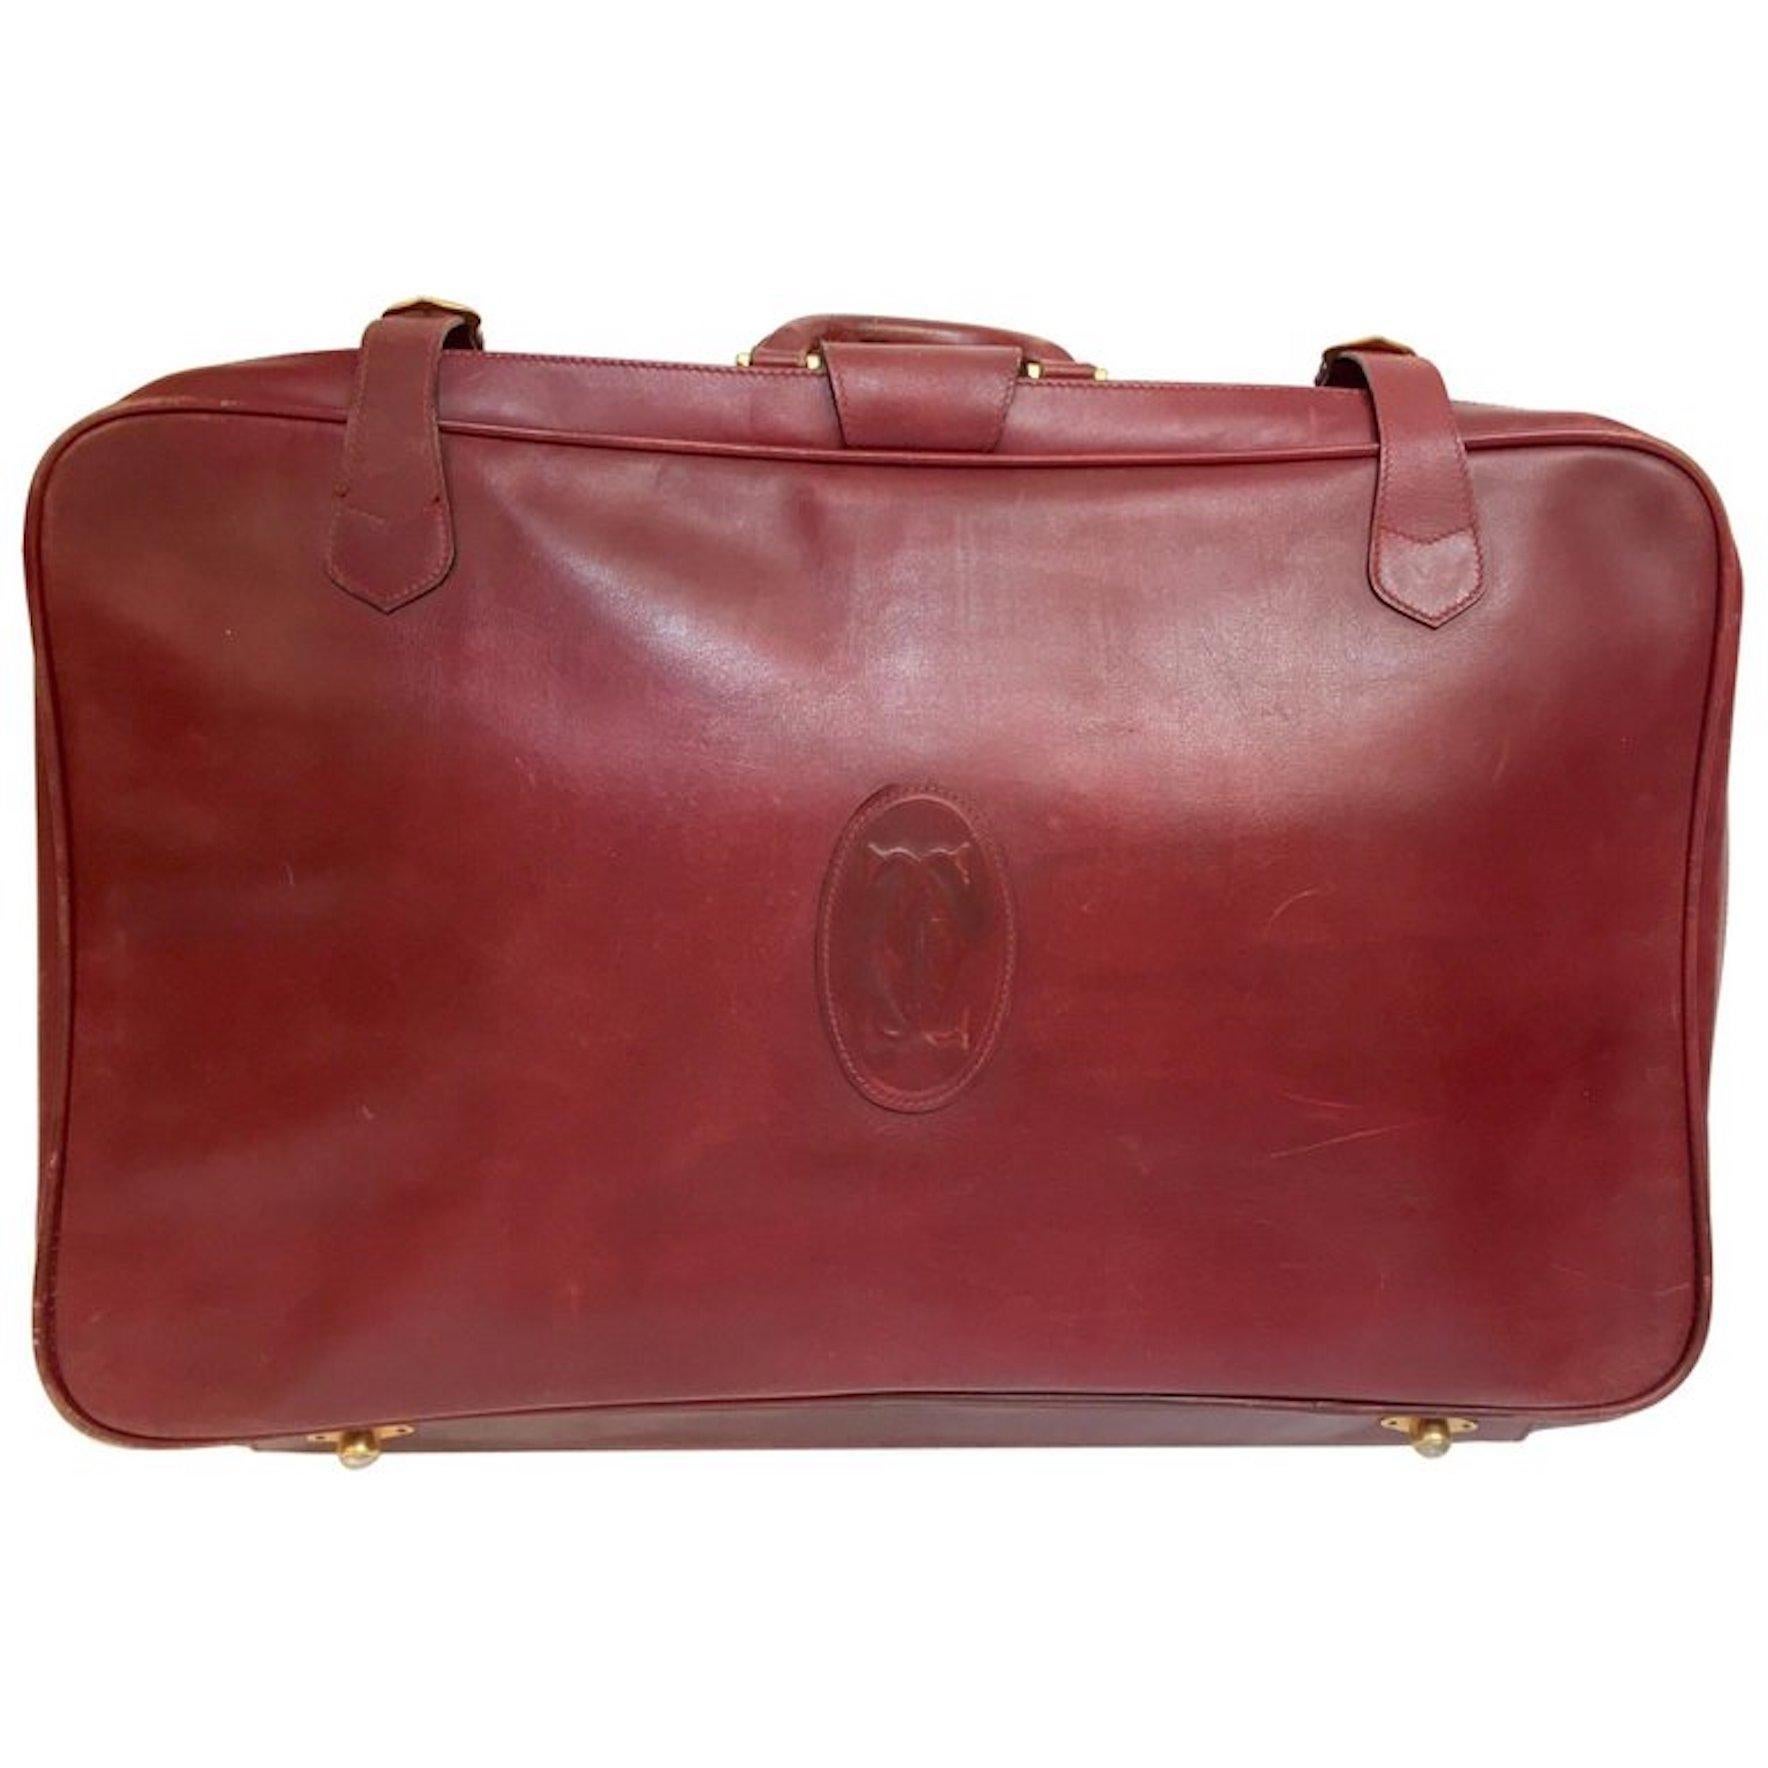 Les Must de Cartier Vintage Leather Suitcase Burgundy Bordeaux Luggage For Sale 2